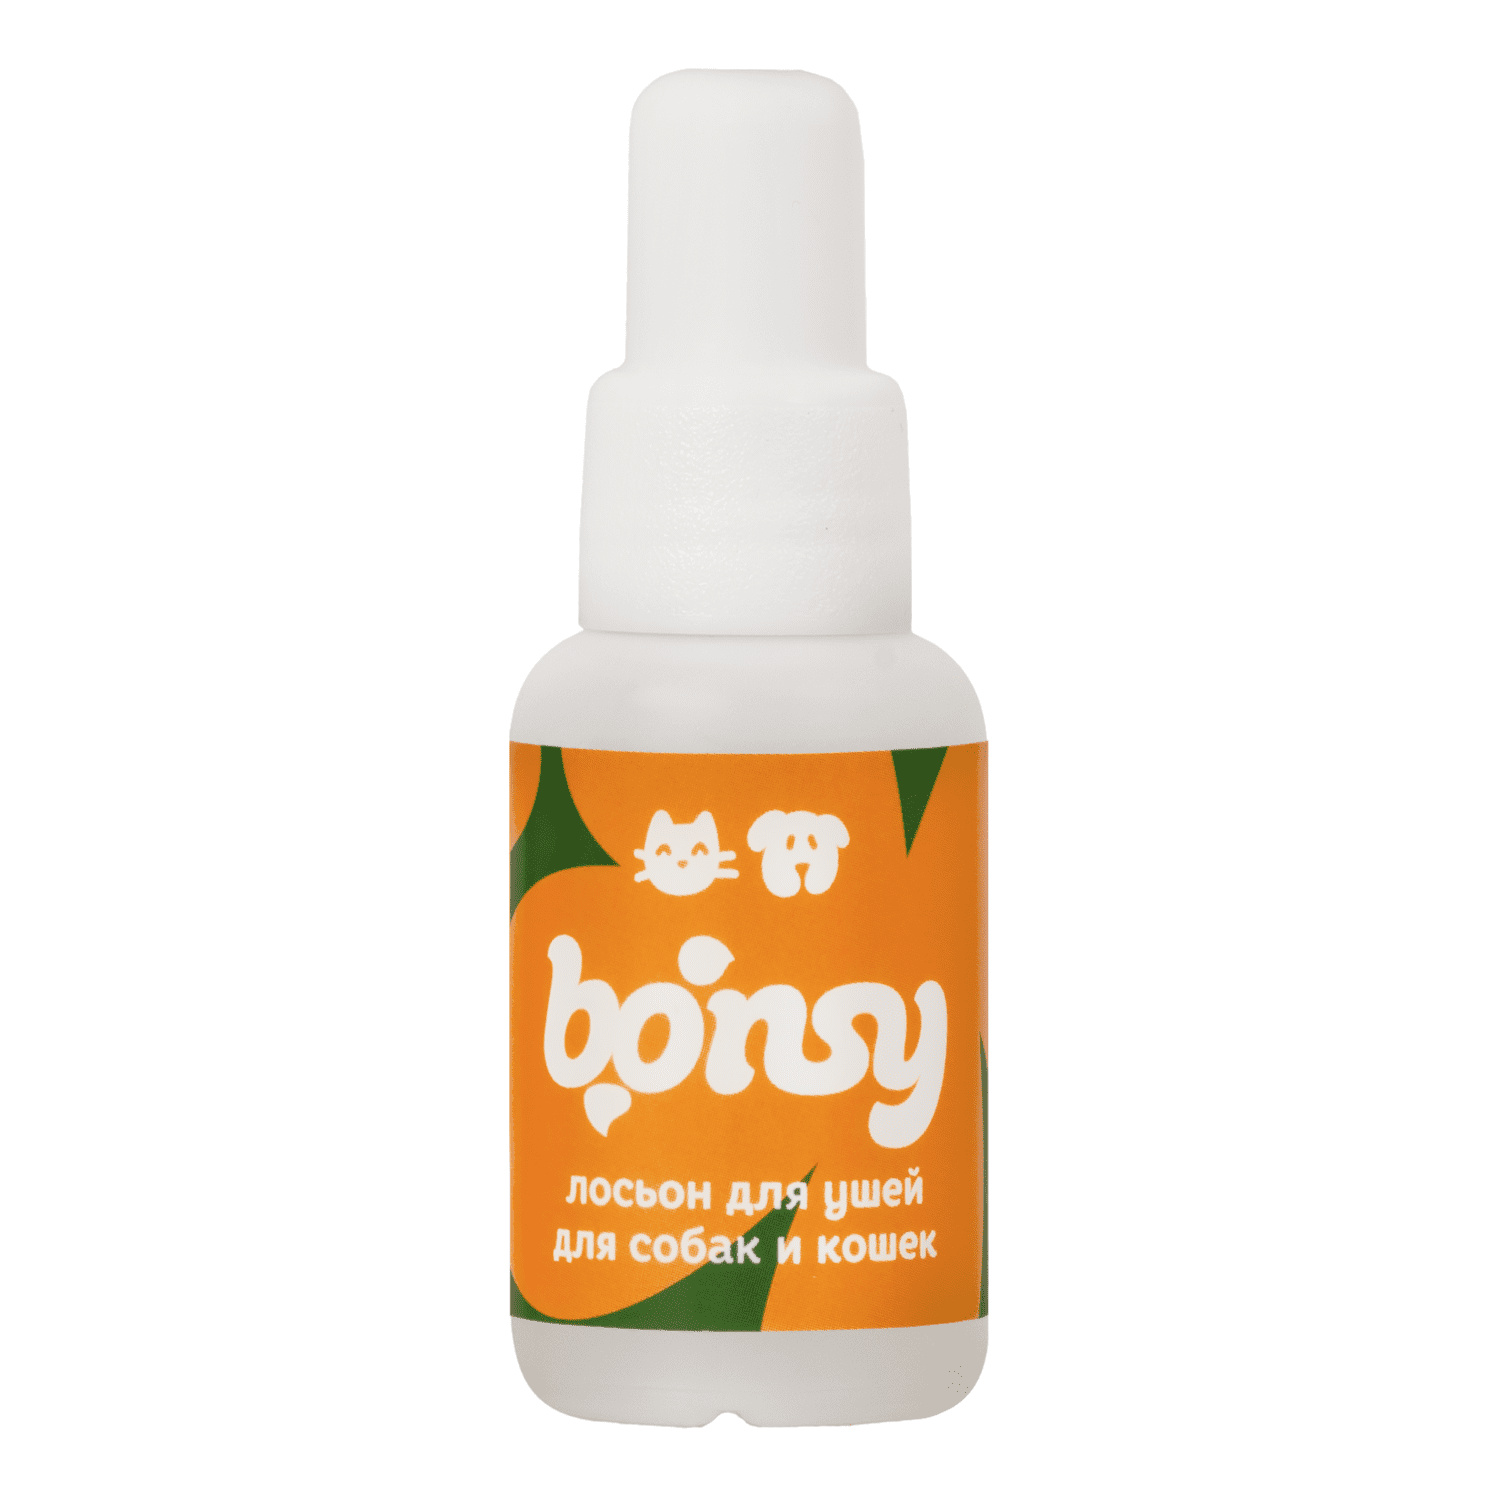 Bonsy Bonsy лосьон для очистки ушей кошек и собак (30 г) bonsy bonsy антипаразитарные биокапли на холку для котят и кошек 30 г